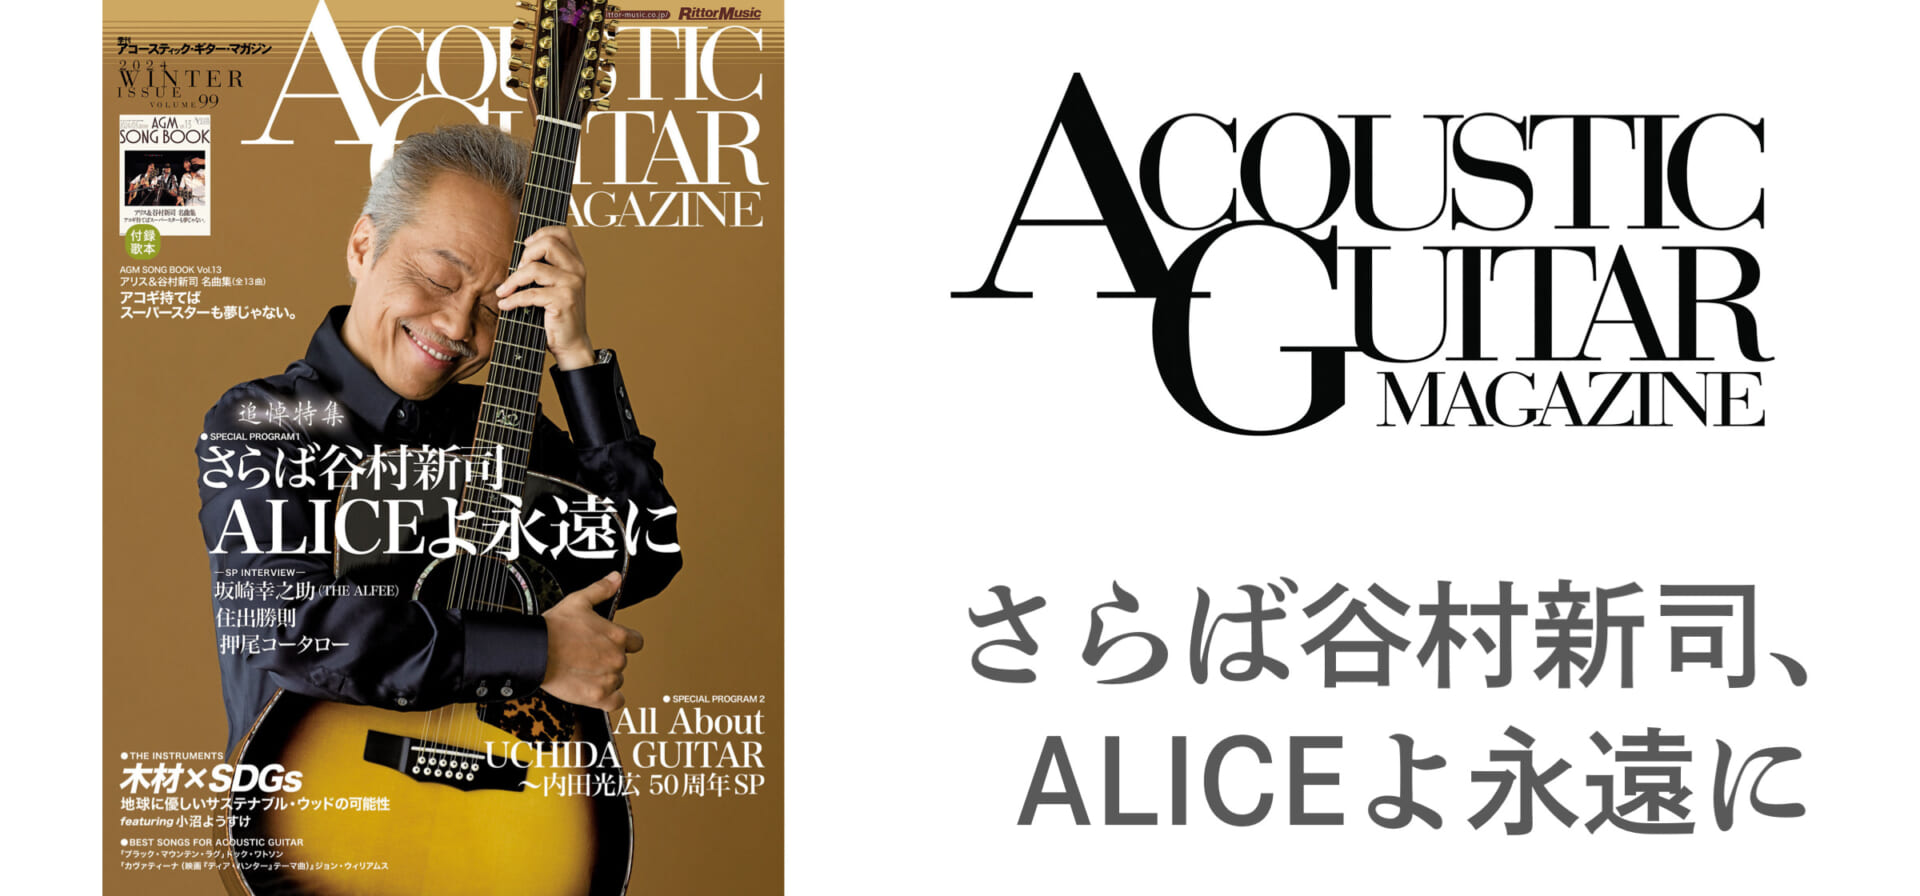 アコースティック・ギター・マガジン最新号Vol.99は、谷村新司追悼特集